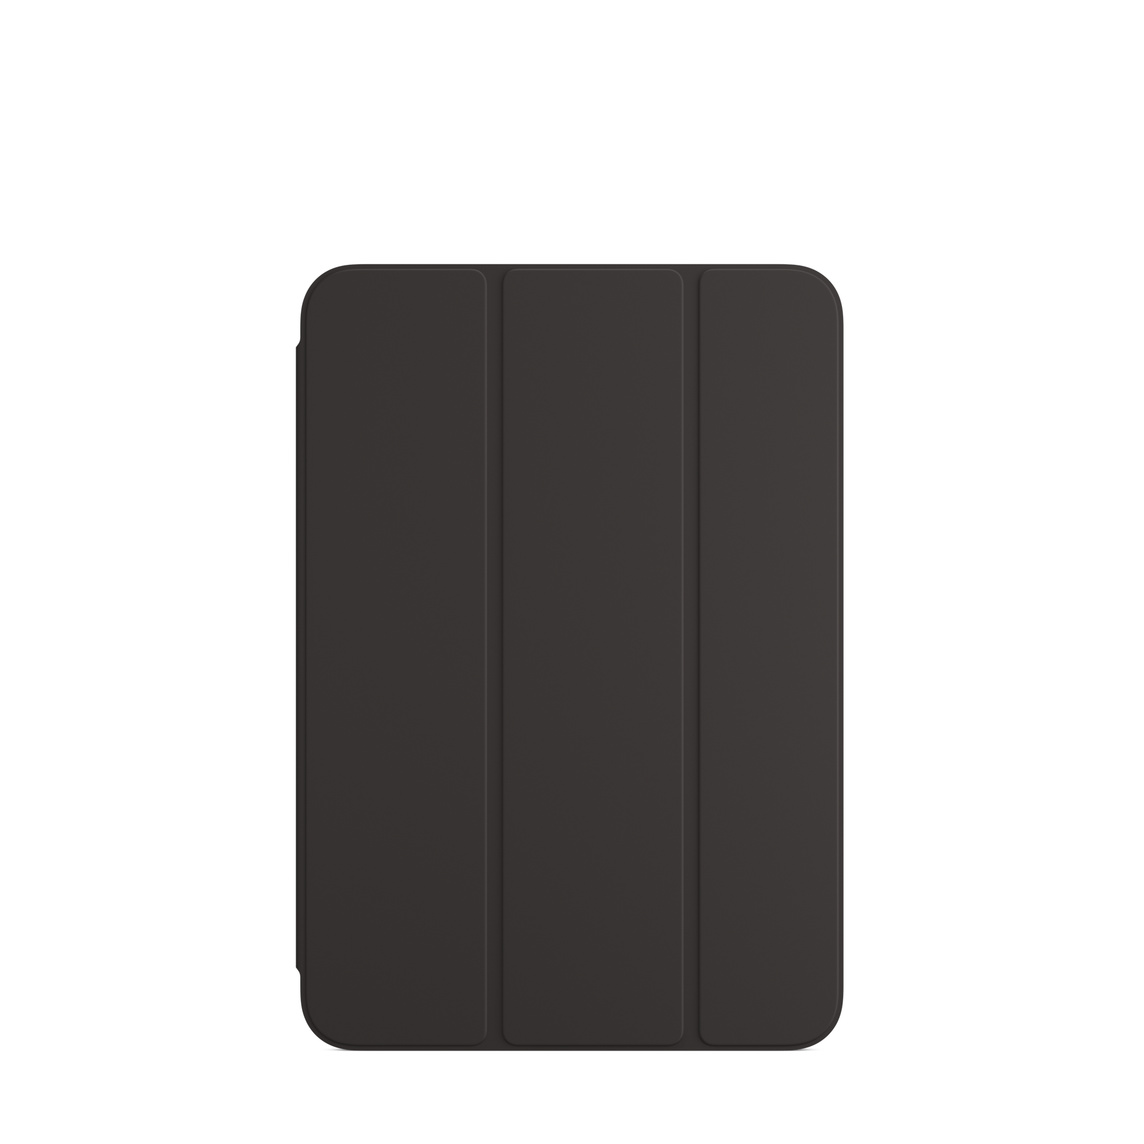 Smart Folio for iPad mini (6th generation) in Black.